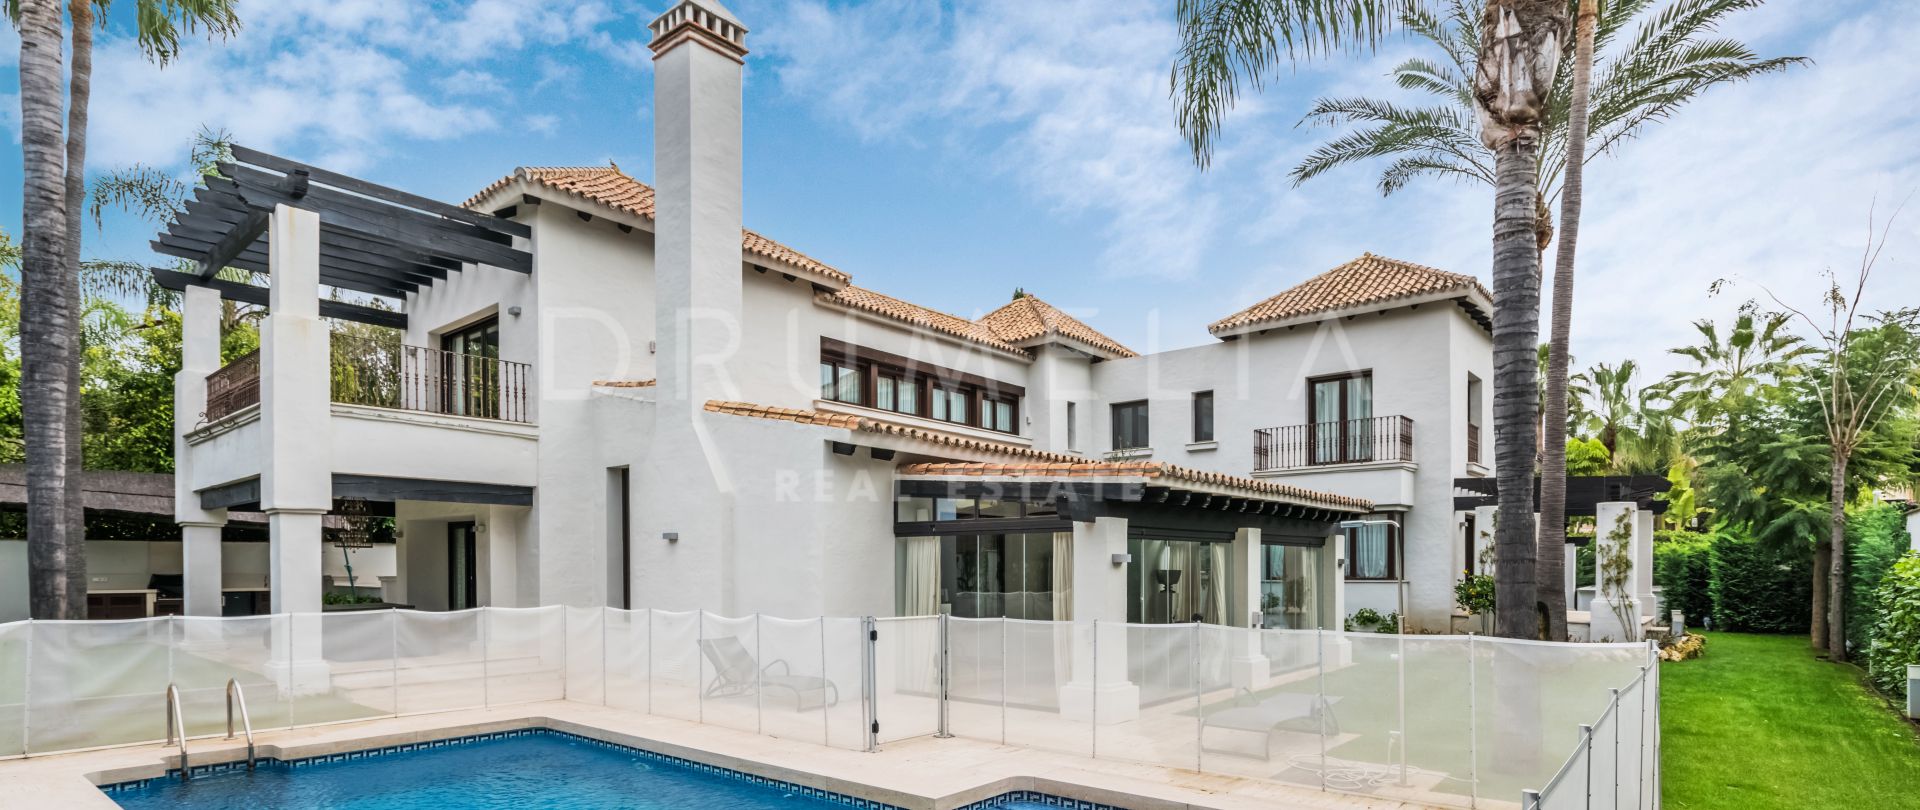 Magnifica Villa moderna de lujo en venta y en alquiler en Marbella - Puerto Banus, Marbella